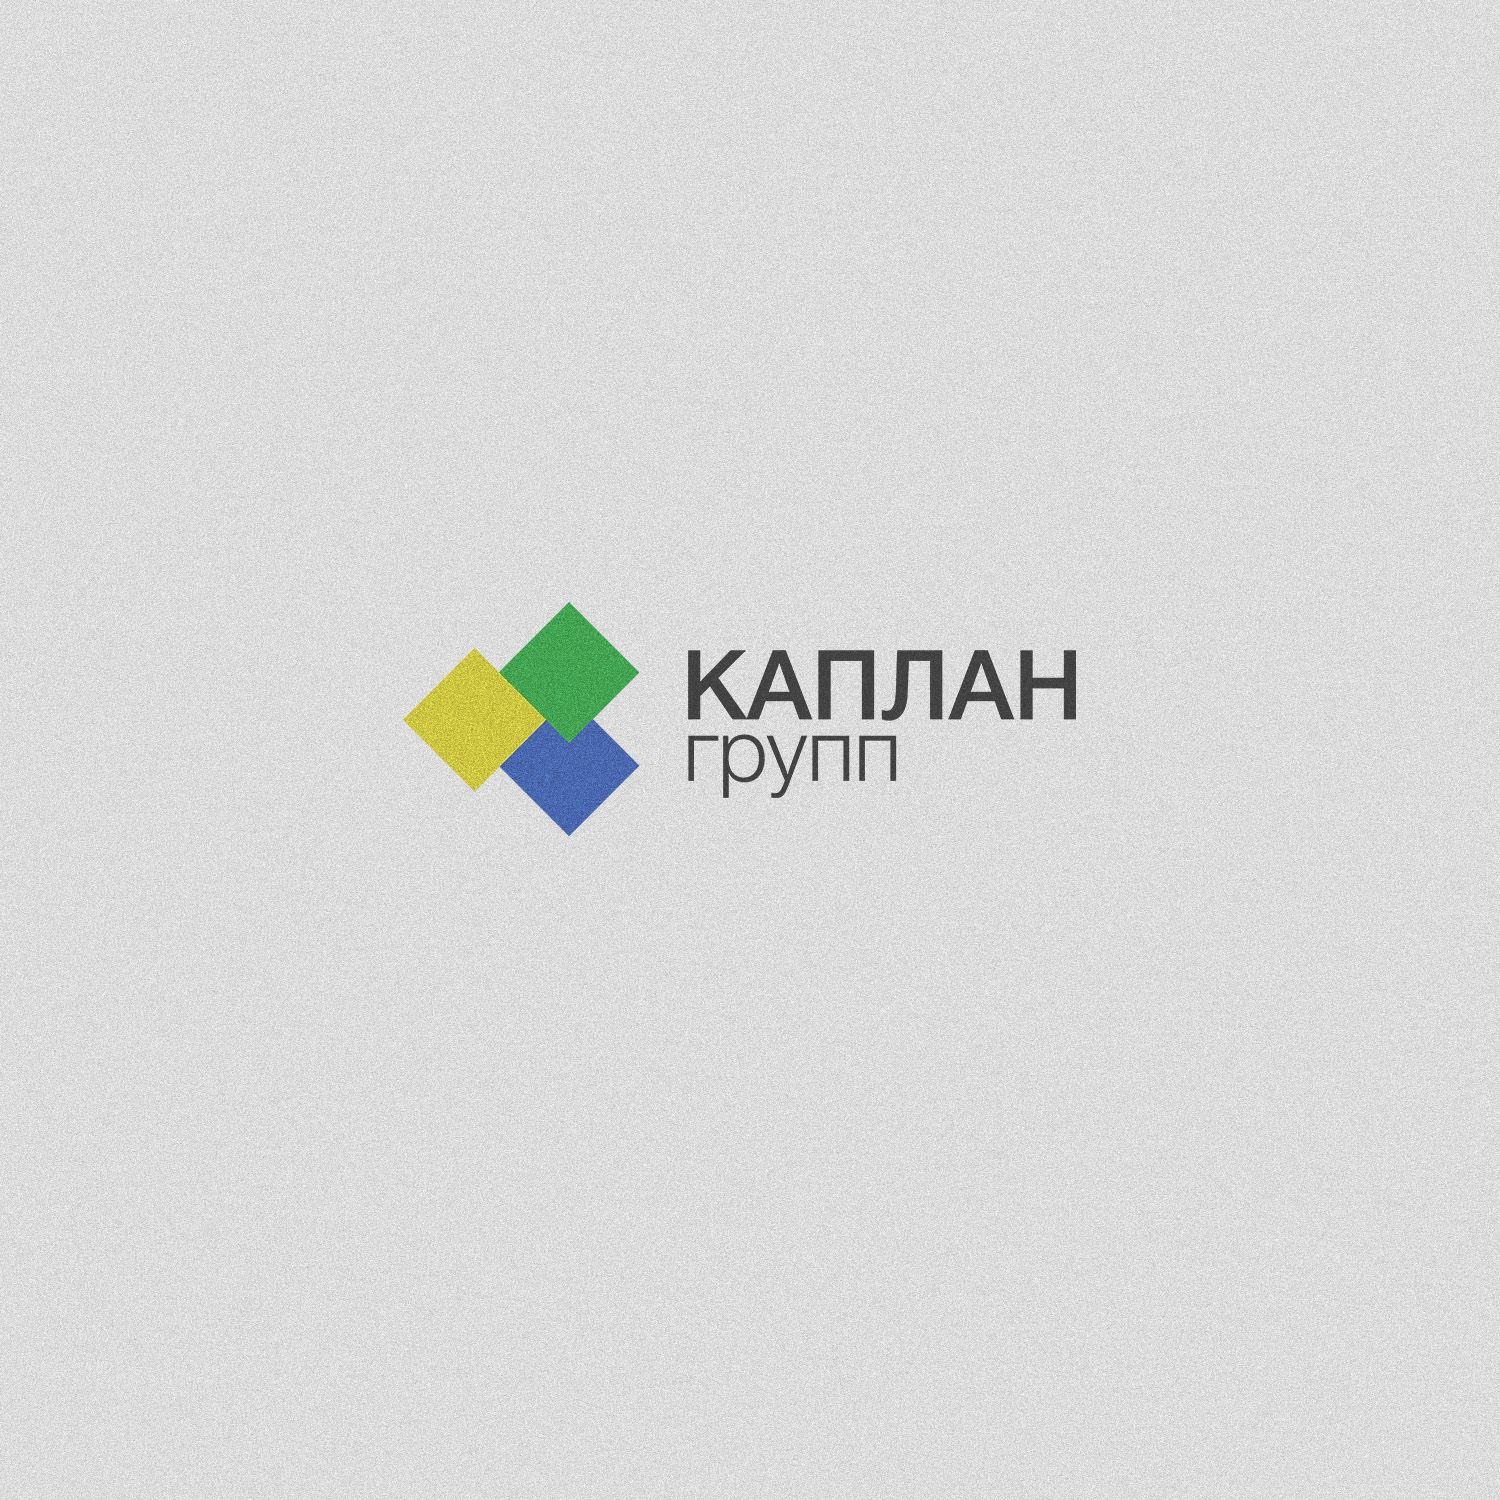 Логотип для KAPLAN group (КАПЛАН Групп) - дизайнер vnezapniydesign